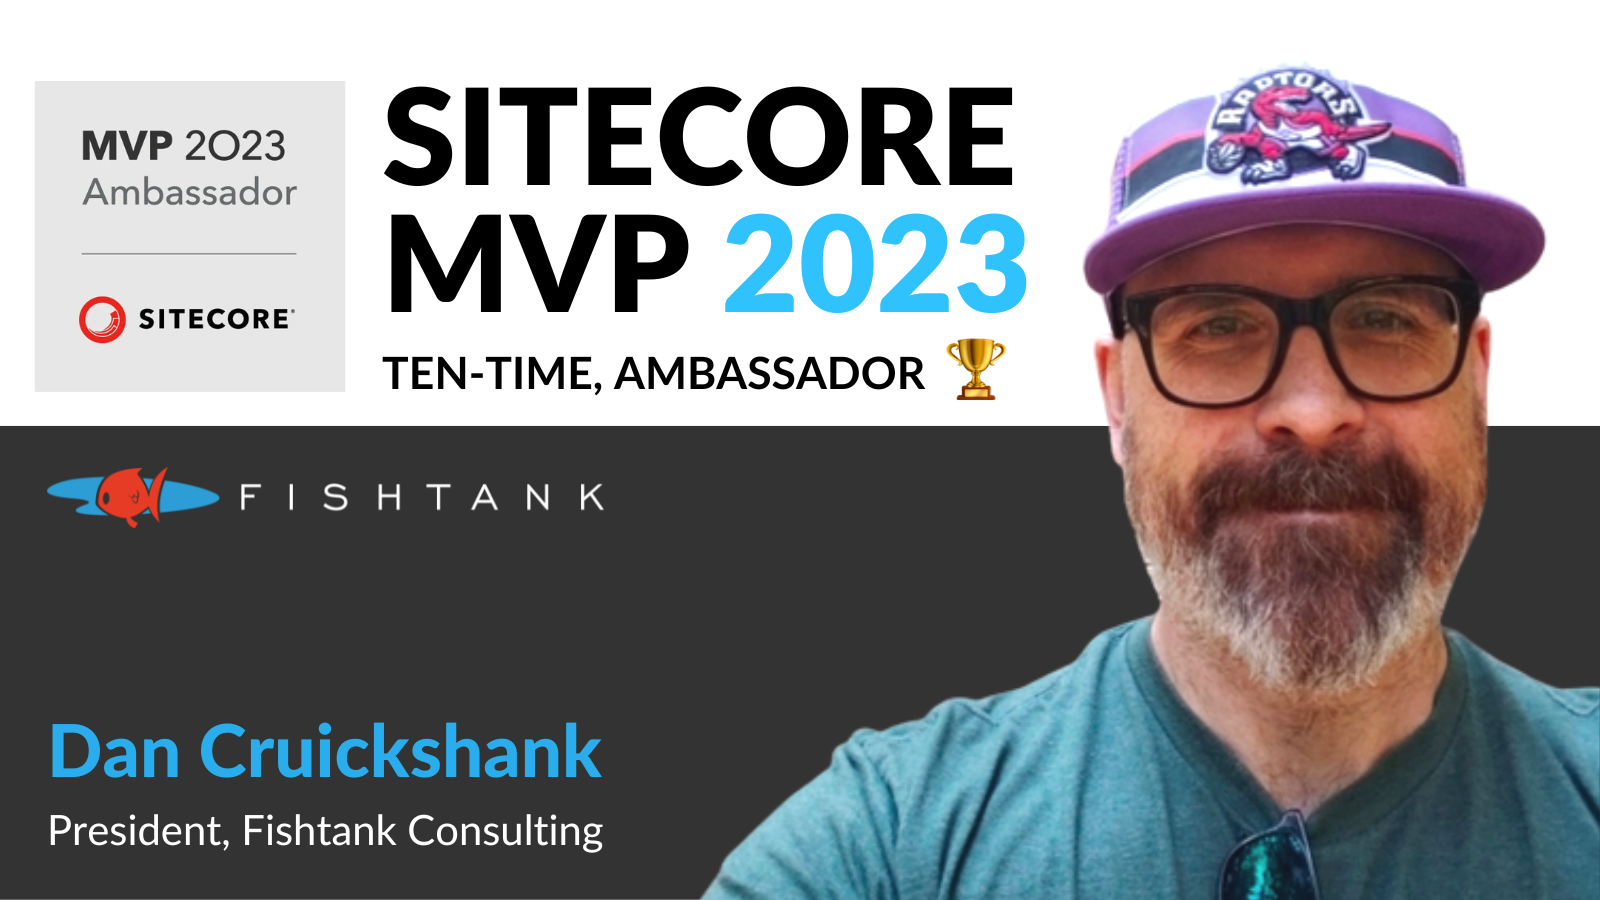 Dan Cruickshank wins Sitecore MVP for 10 years running in 2023